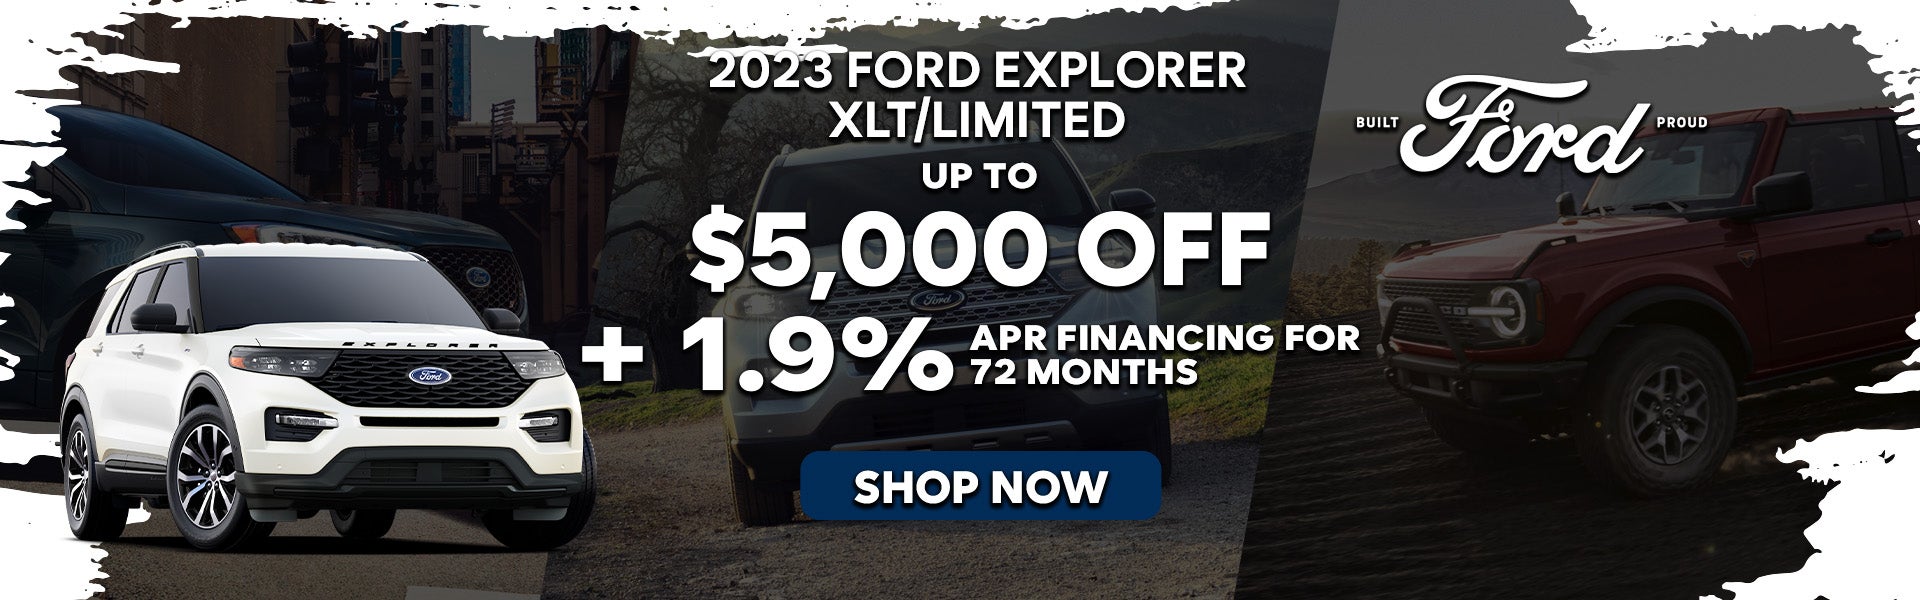 2023 Ford Explorer XLT/Limited Special Offer